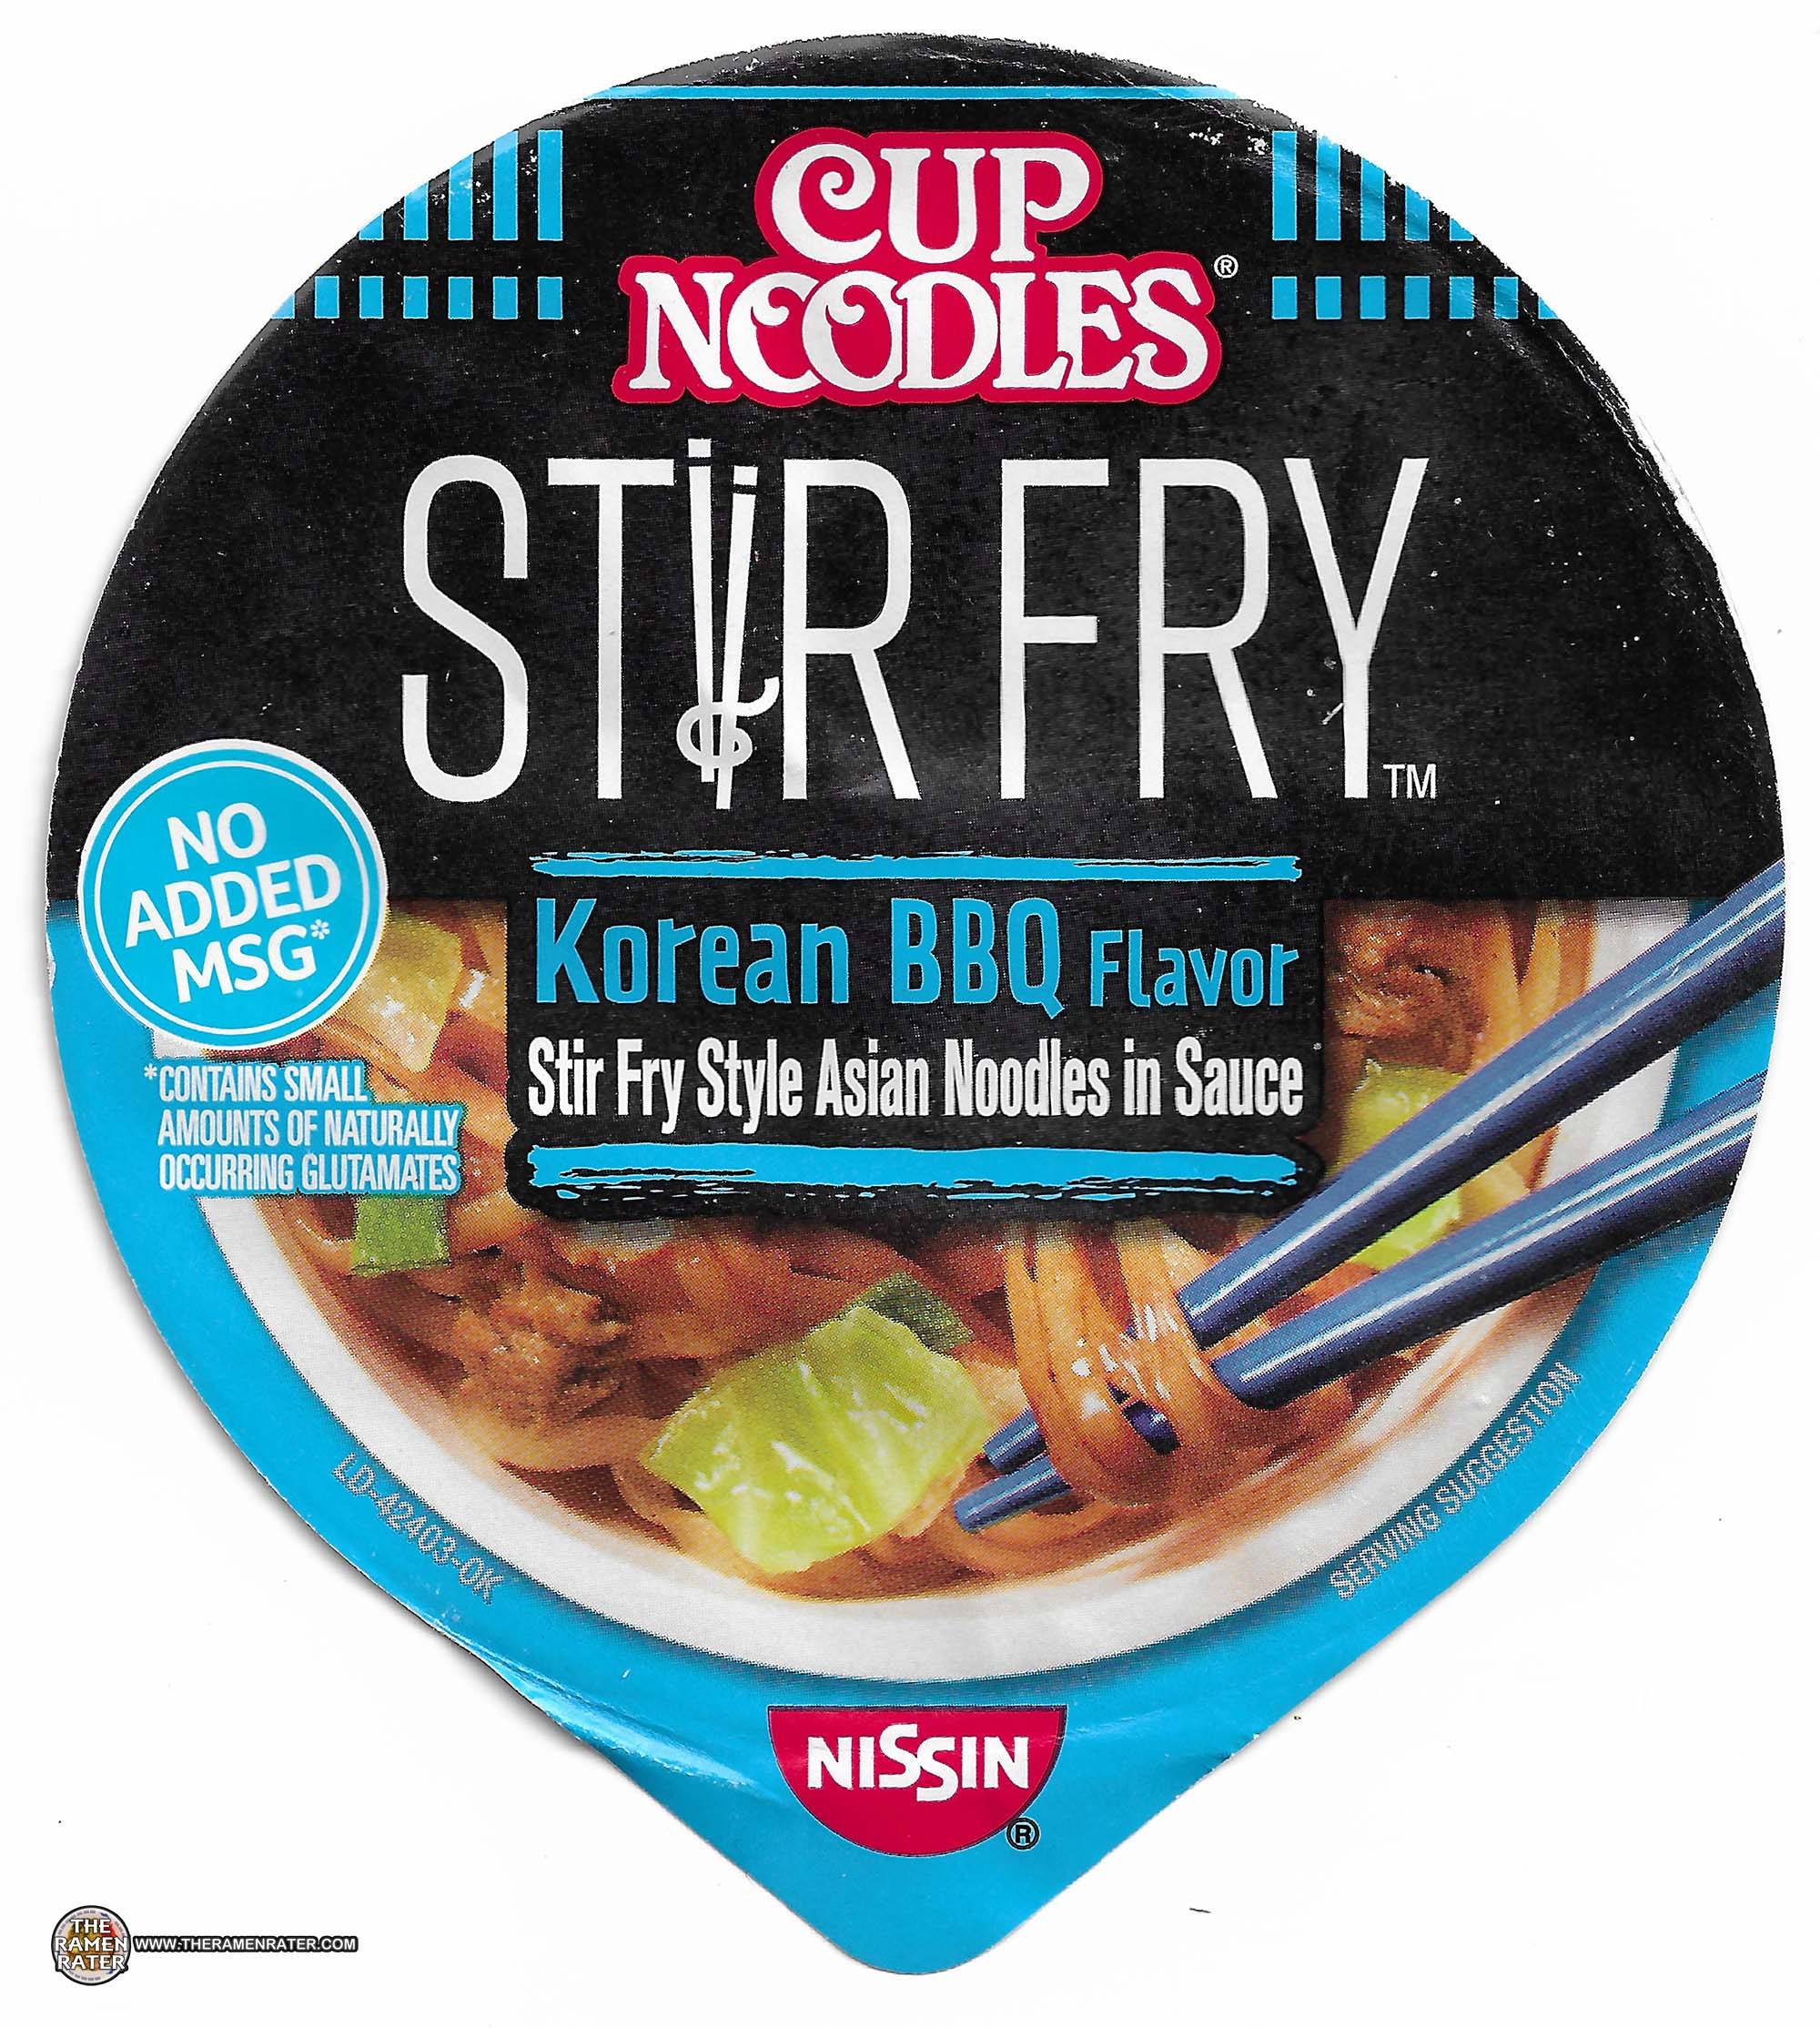 #3365: Nissin Cup Noodles Stir Fry Korean BBQ Flavor - United States